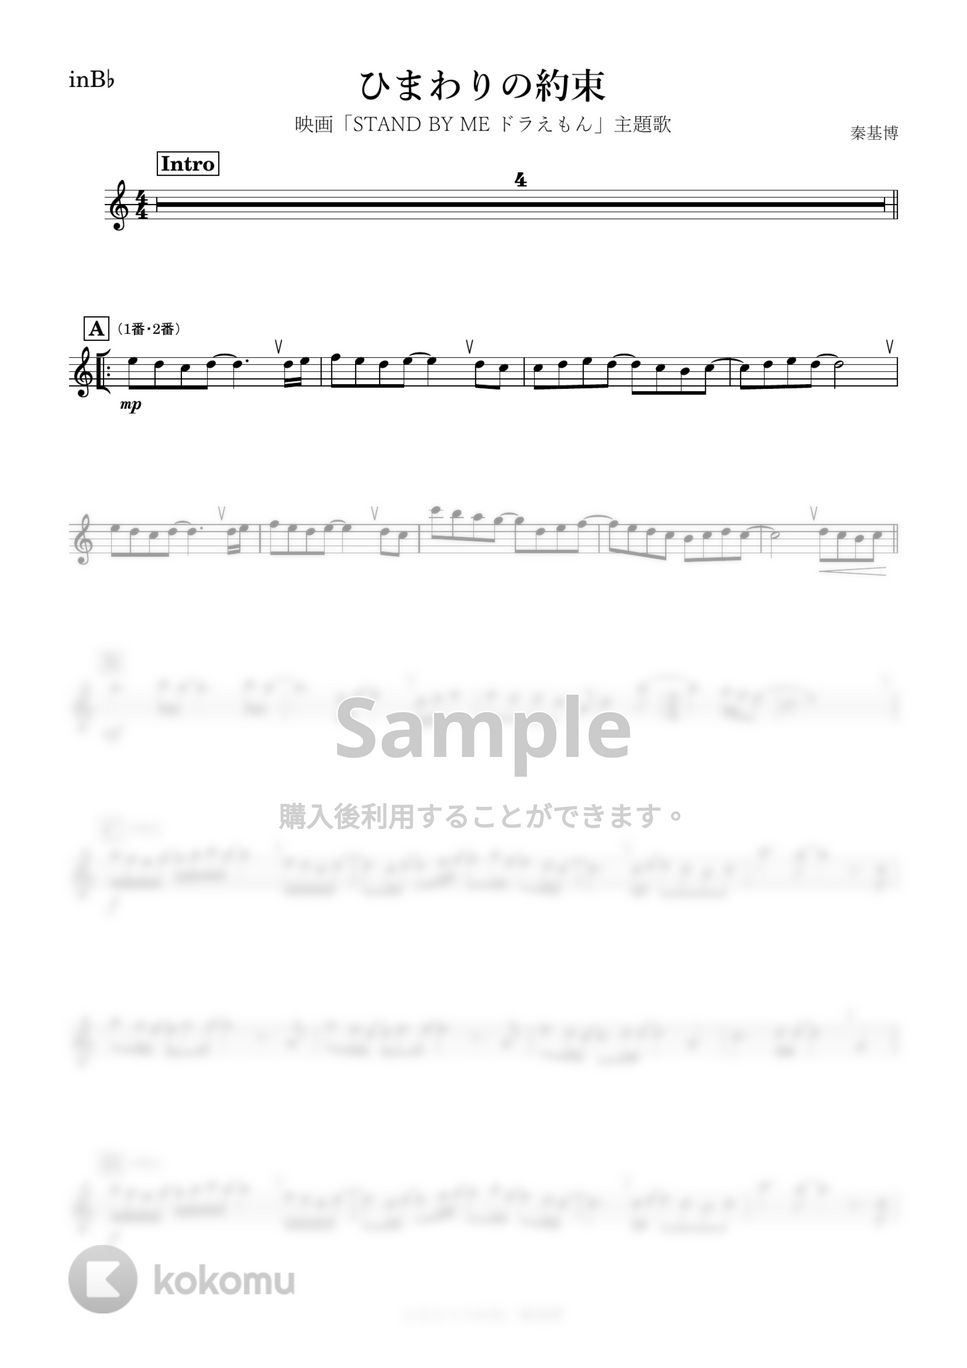 秦基博 - ひまわりの約束 (B♭) by kanamusic